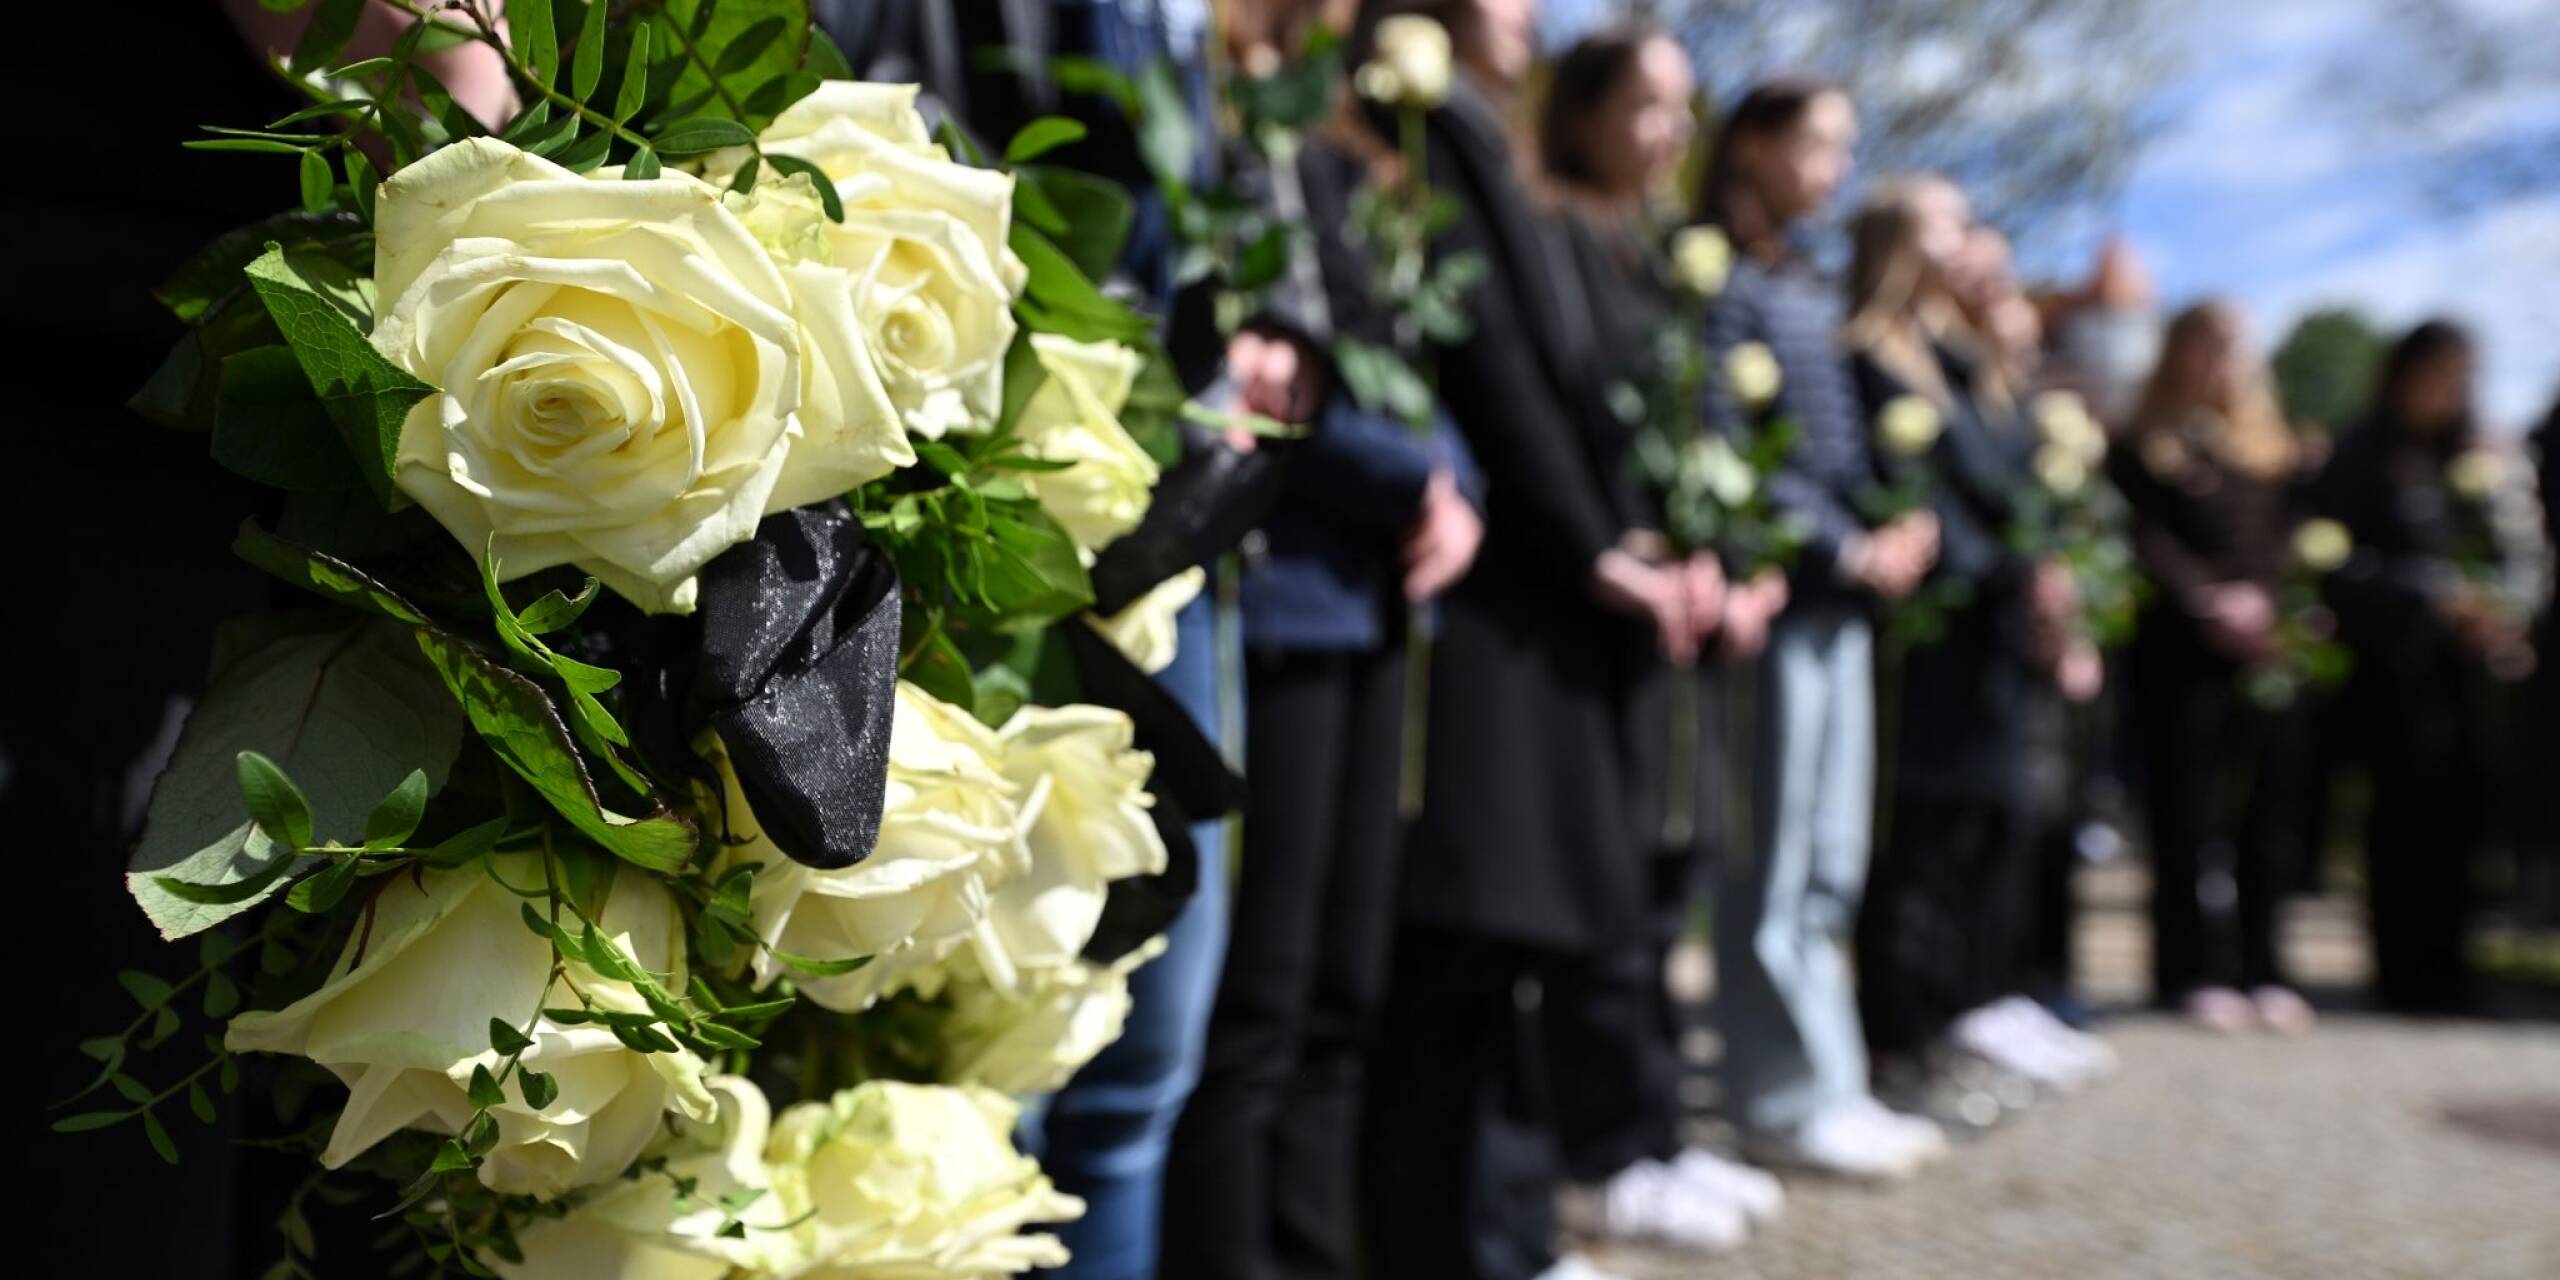 Gedenkveranstaltung zum Schulmassaker am Erfurter Gutenberg-Gymnasium: Am 26. April 2002 hatte ein 19-jähriger Ex-Schüler zwölf Lehrer, zwei Schüler, eine Sekretärin sowie einen Polizisten erschossen und sich dann selbst getötet.